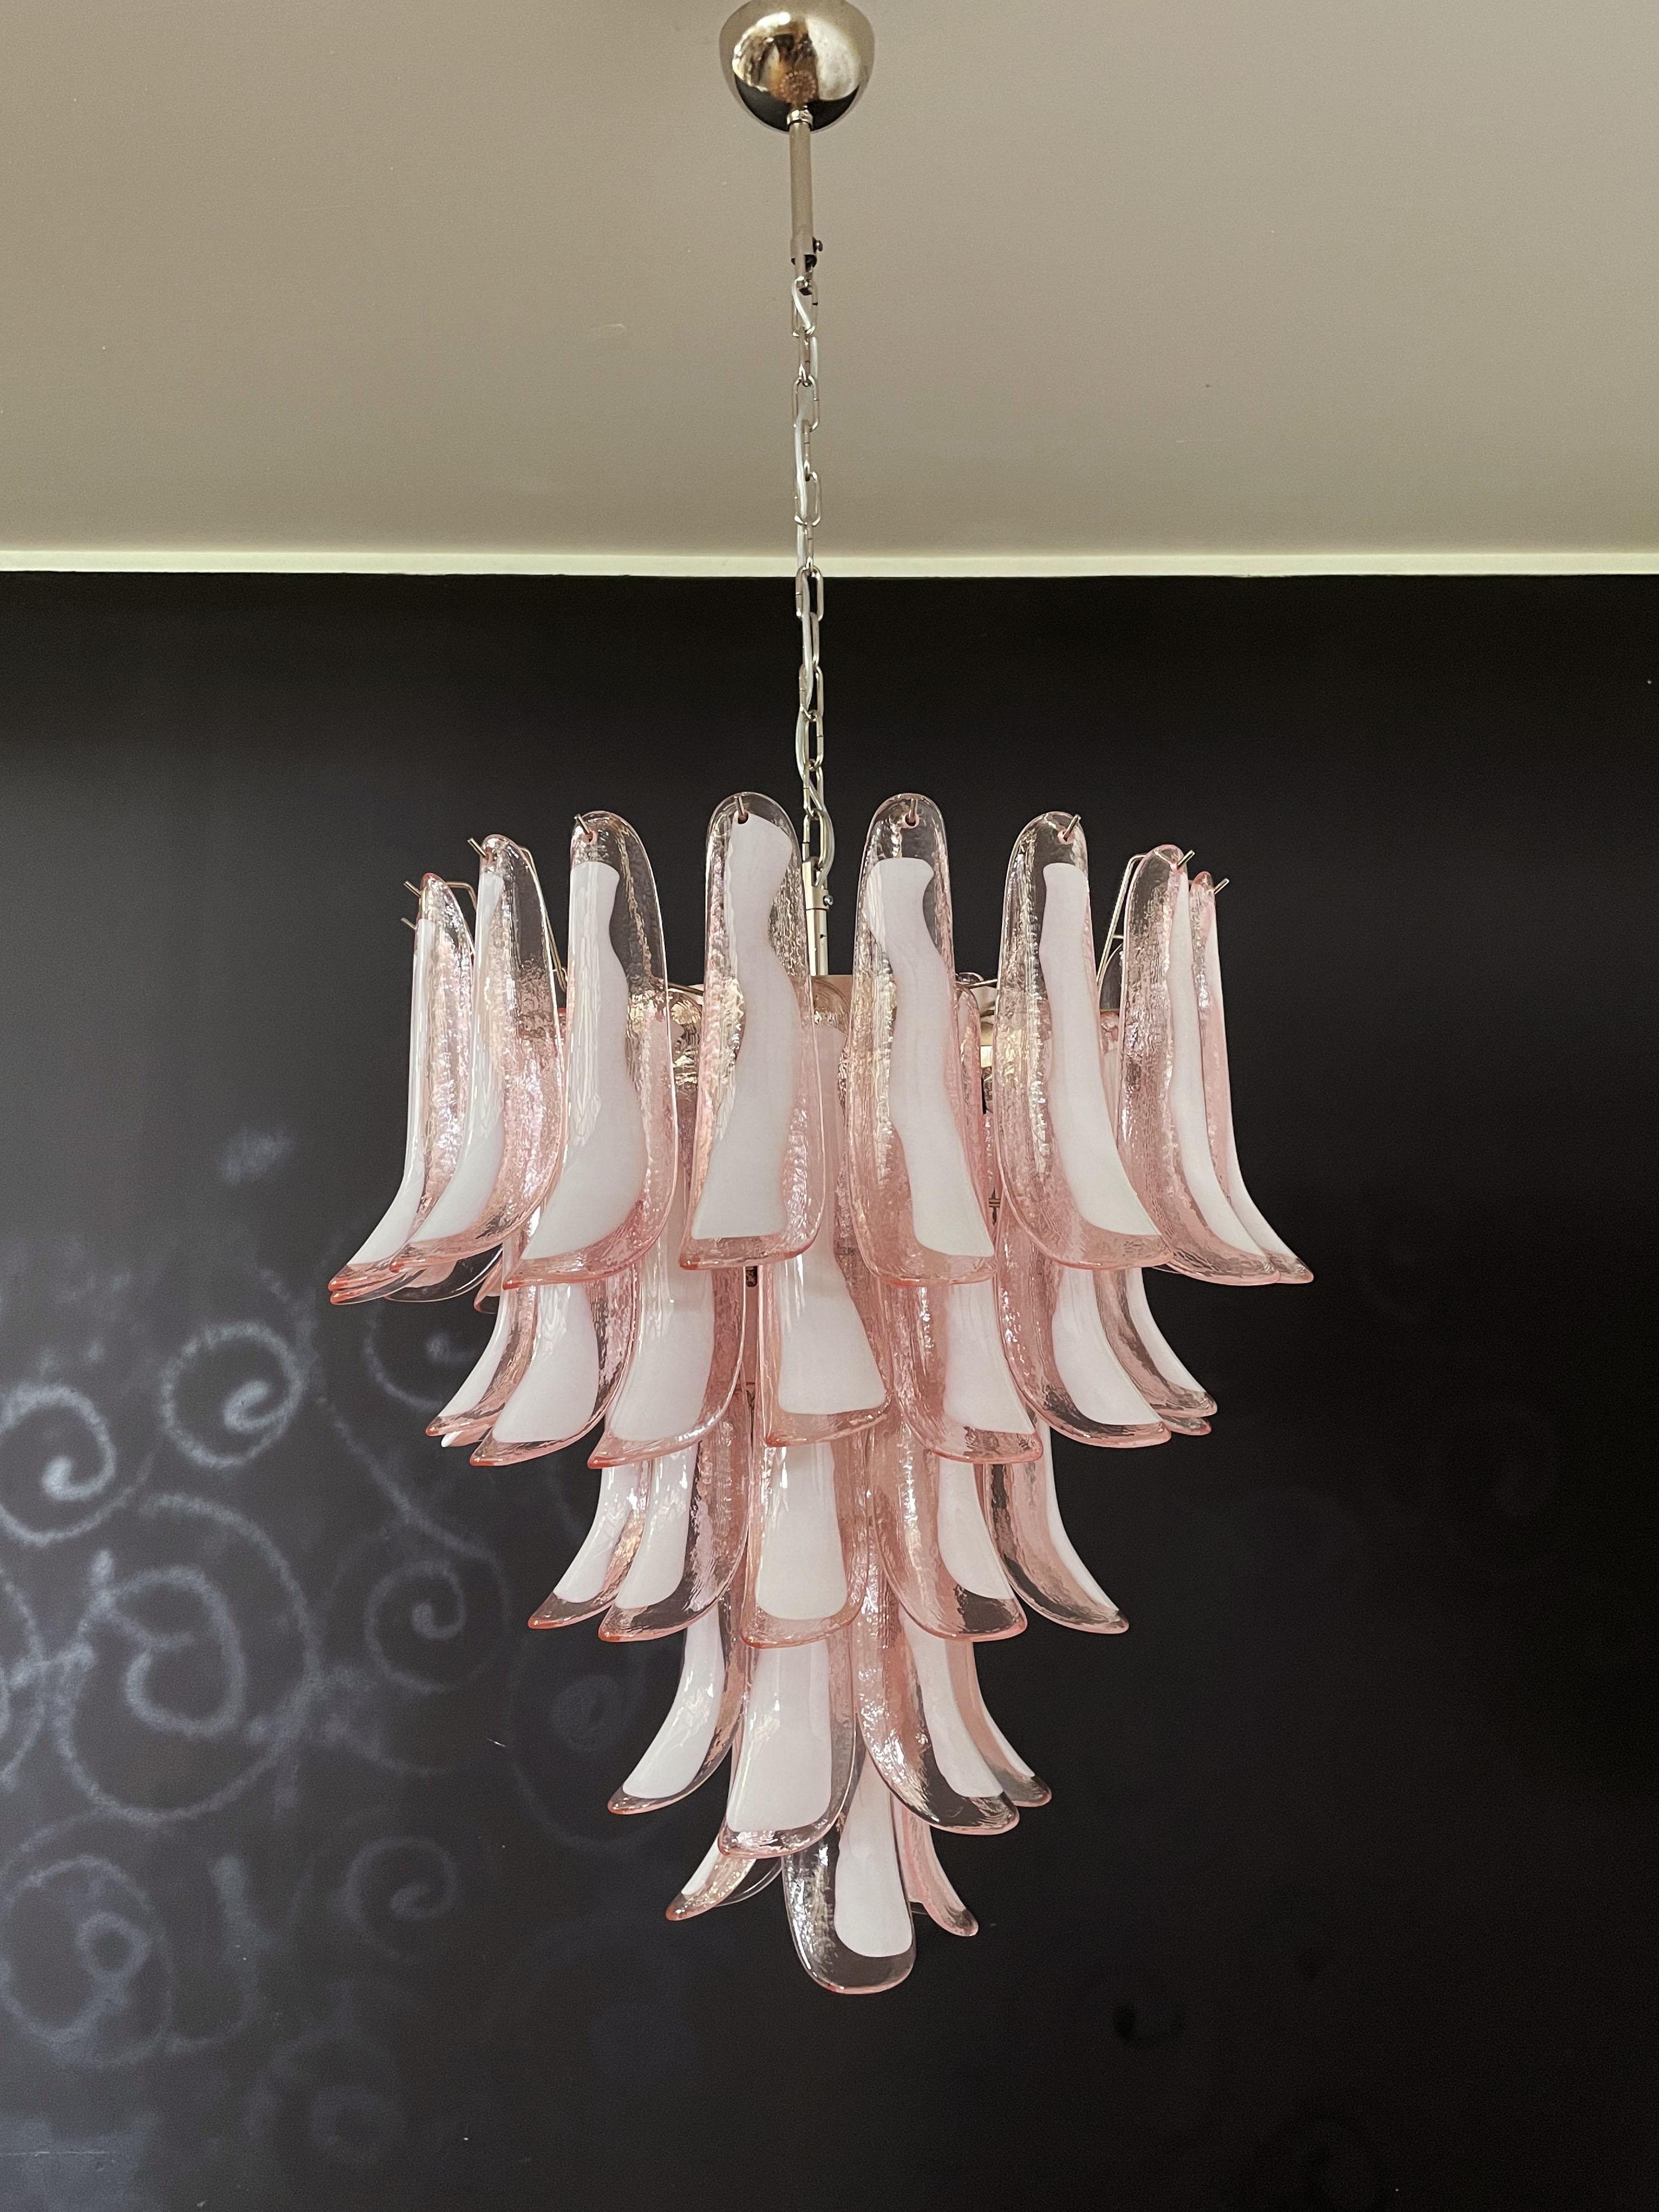 meat chandelier